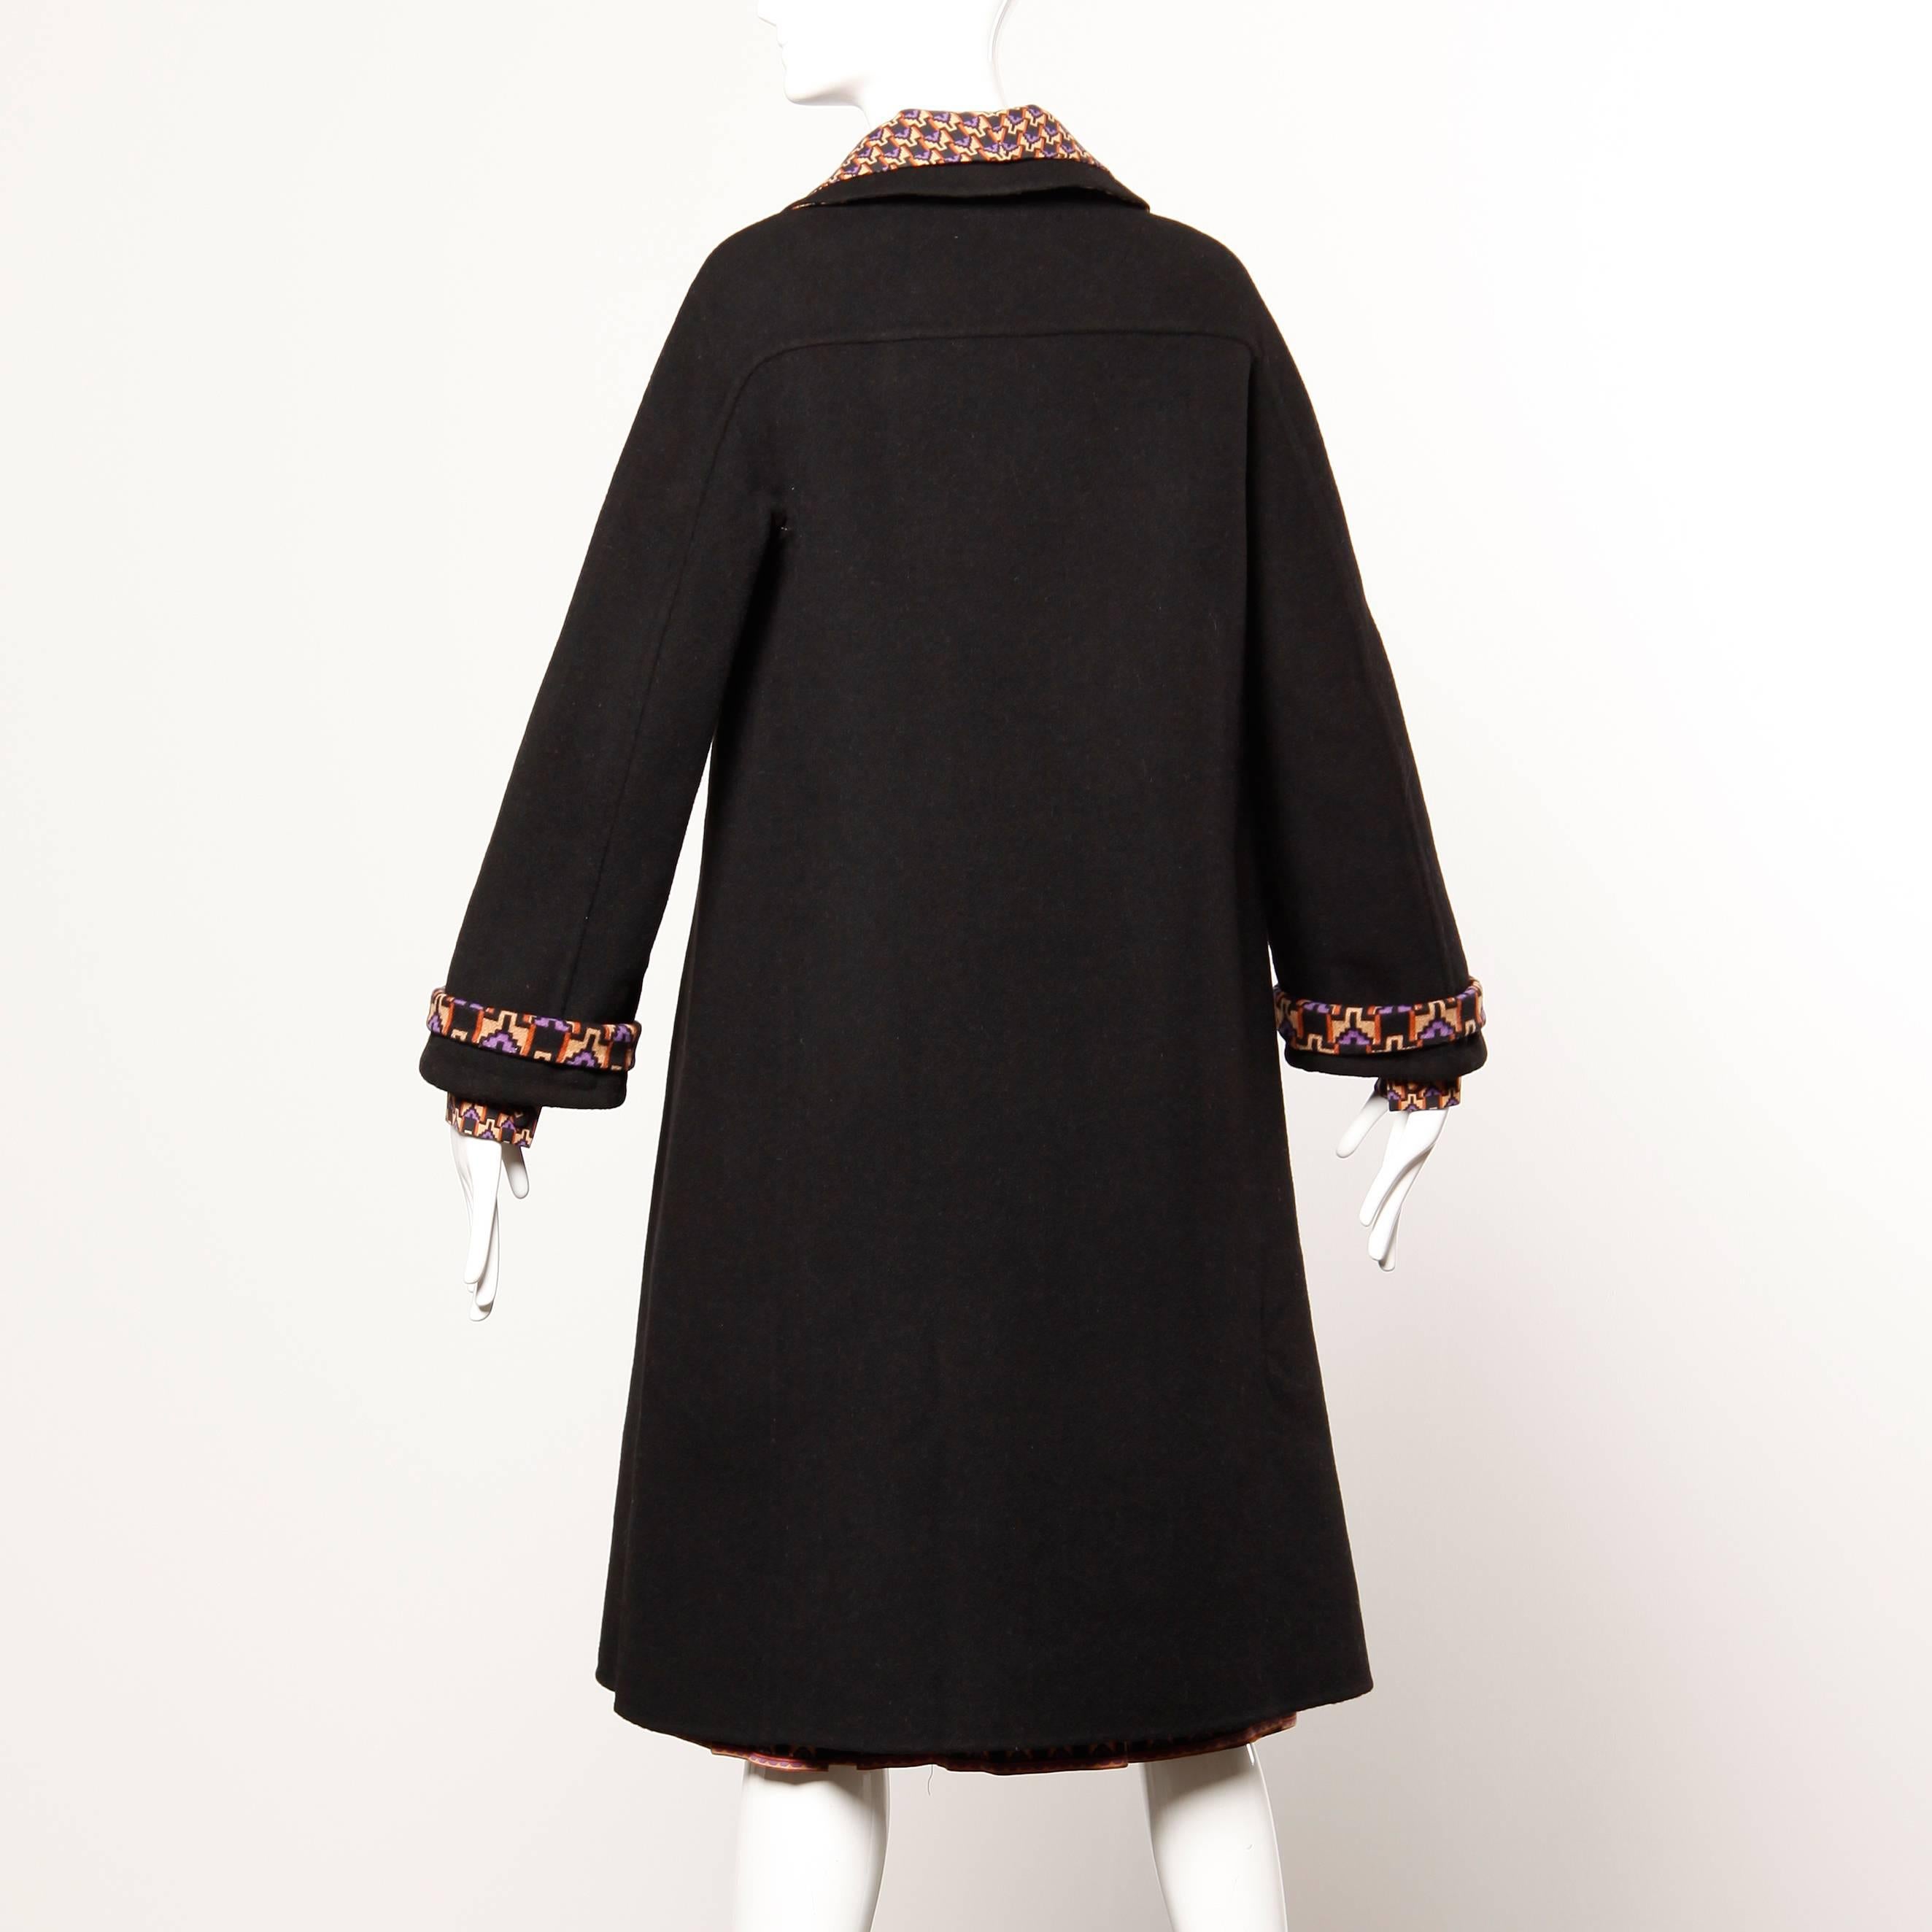 Women's Museum Quality Gucci Vintage 1970s Reversible Wool Coat + Dress Ensemble